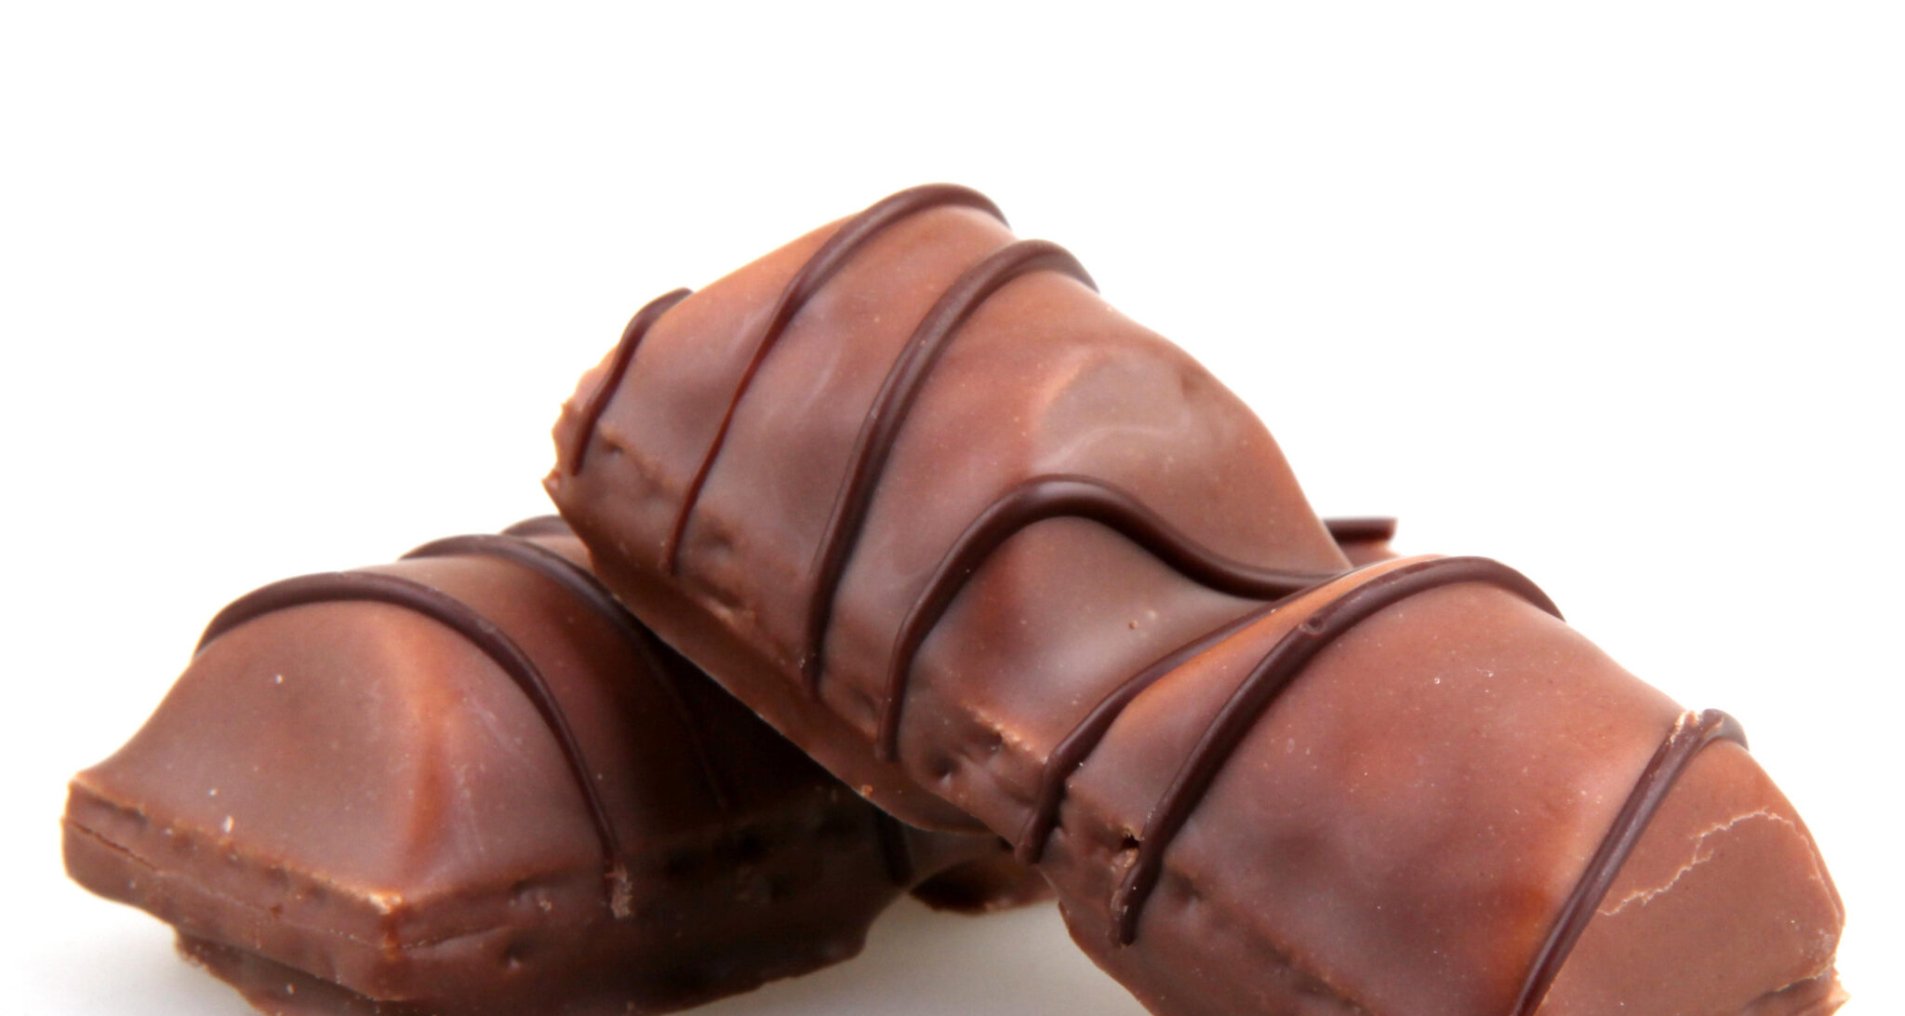 Шоколадные батончики известного производителя станут менее калорийными